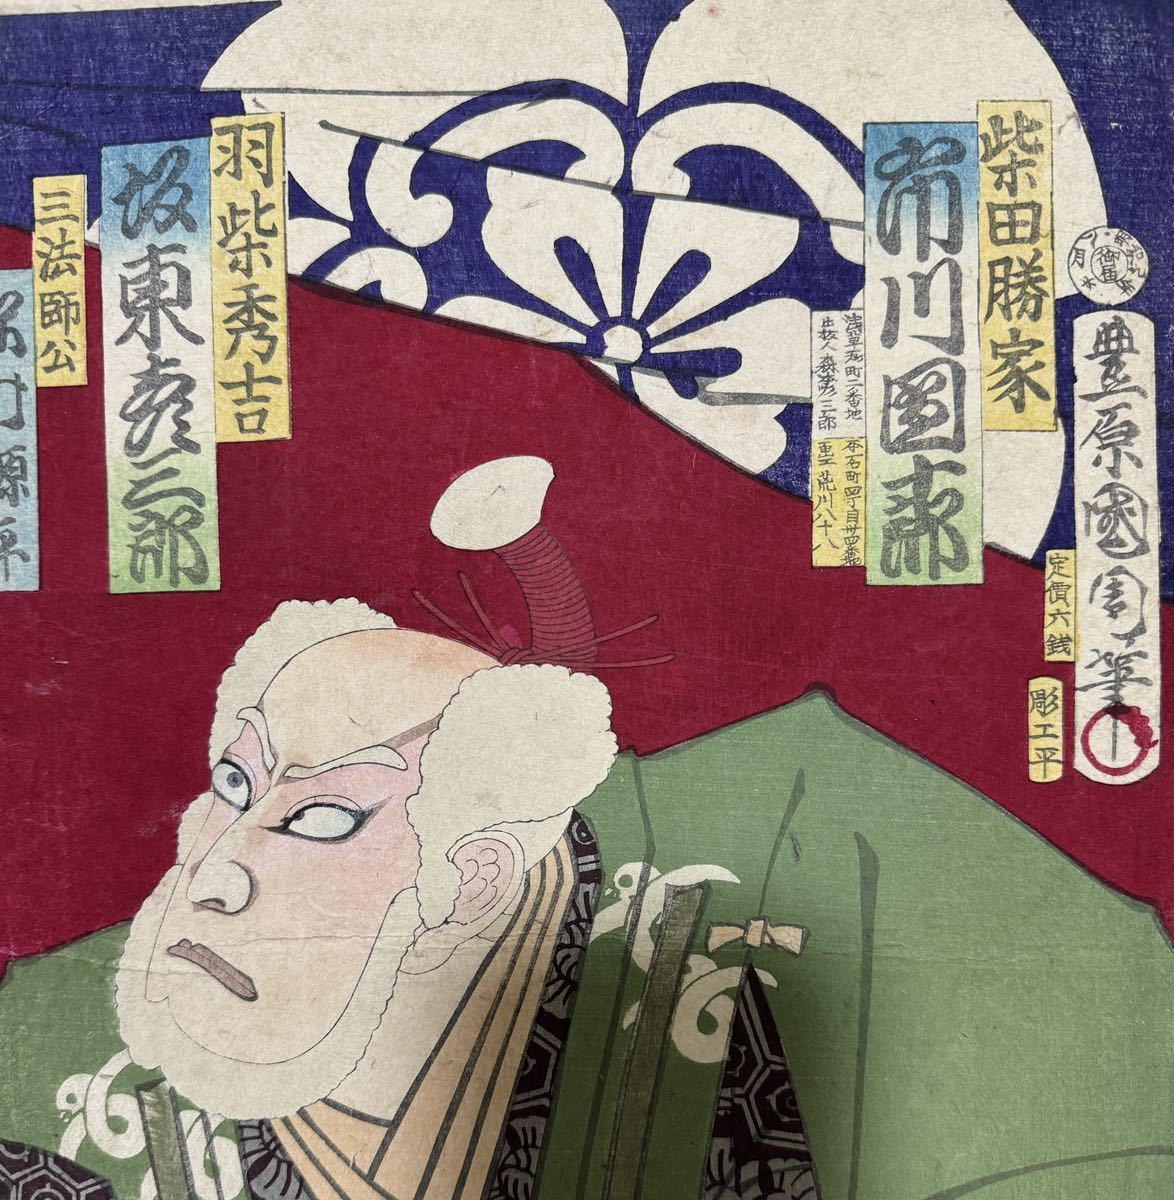  Edo период / подлинный произведение .. страна . подлинный товар картина в жанре укиё гравюра на дереве сцена из кабуки изображение актеров газонная трава .... большой размер три листов .. обратная сторона удар .28